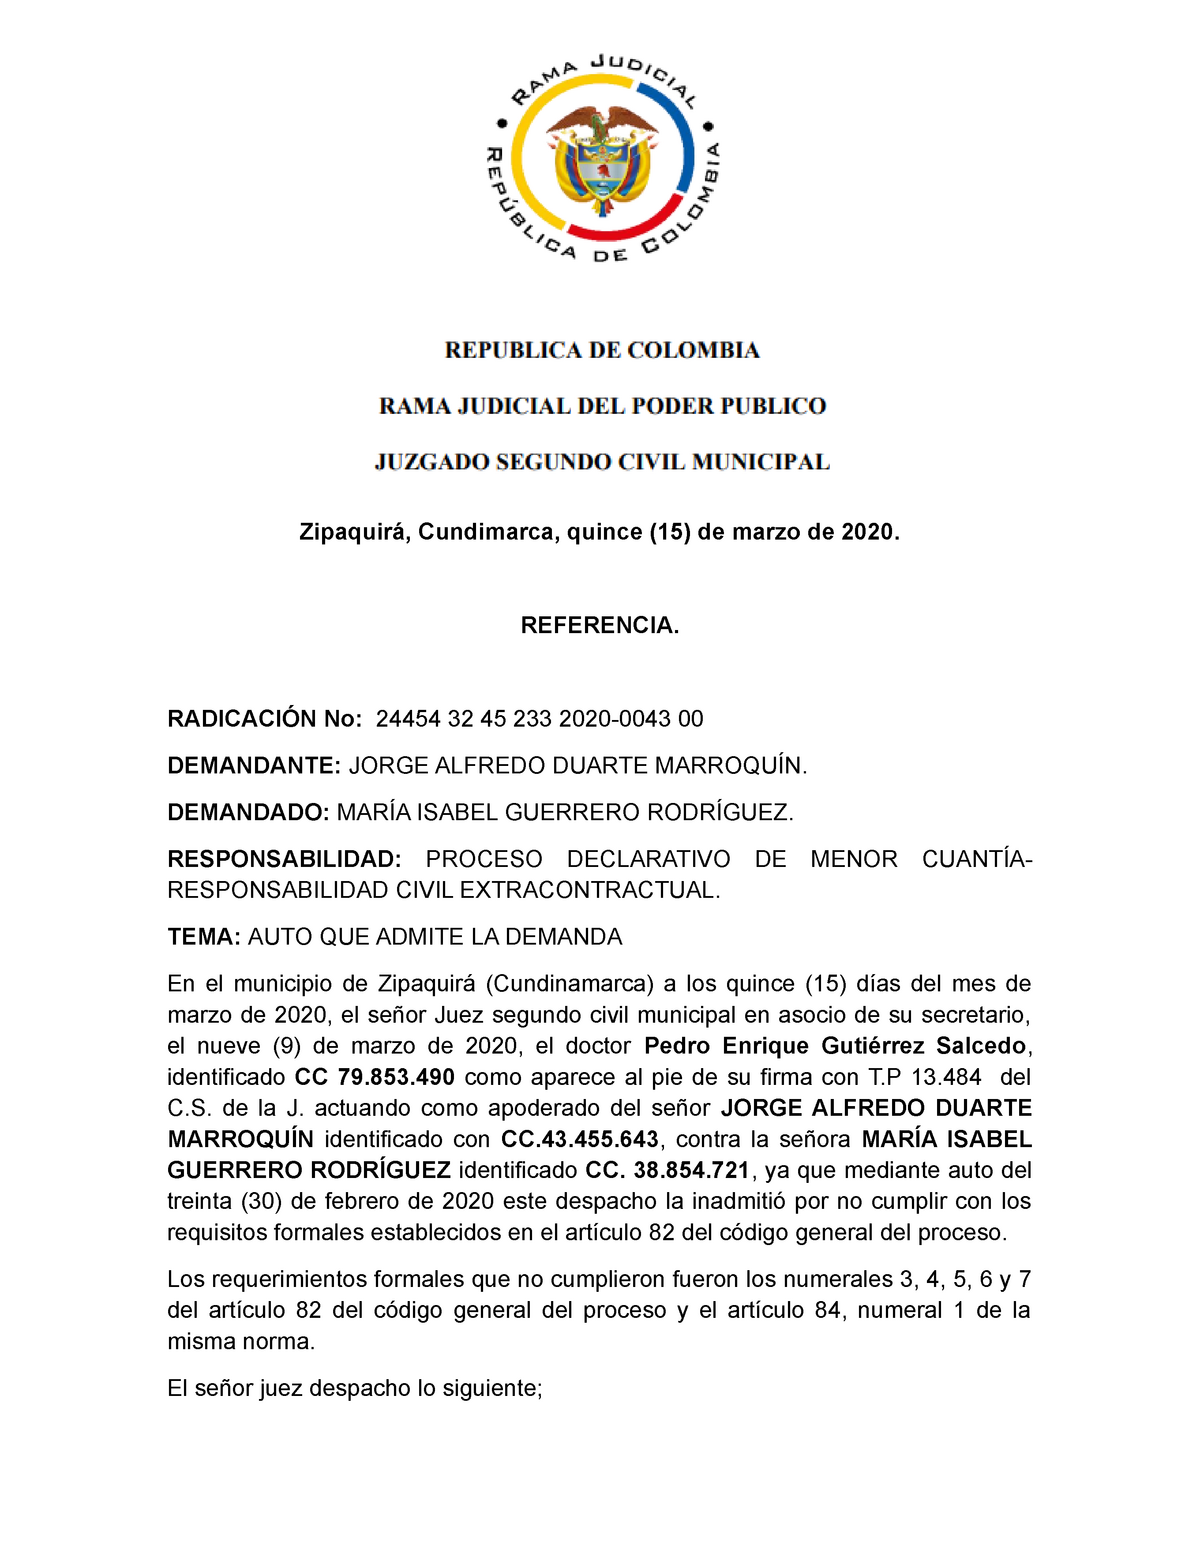 Auto admisorio - procesal - Zipaquirá, Cundimarca, quince (15) de marzo de  2020. REFERENCIA. - Studocu